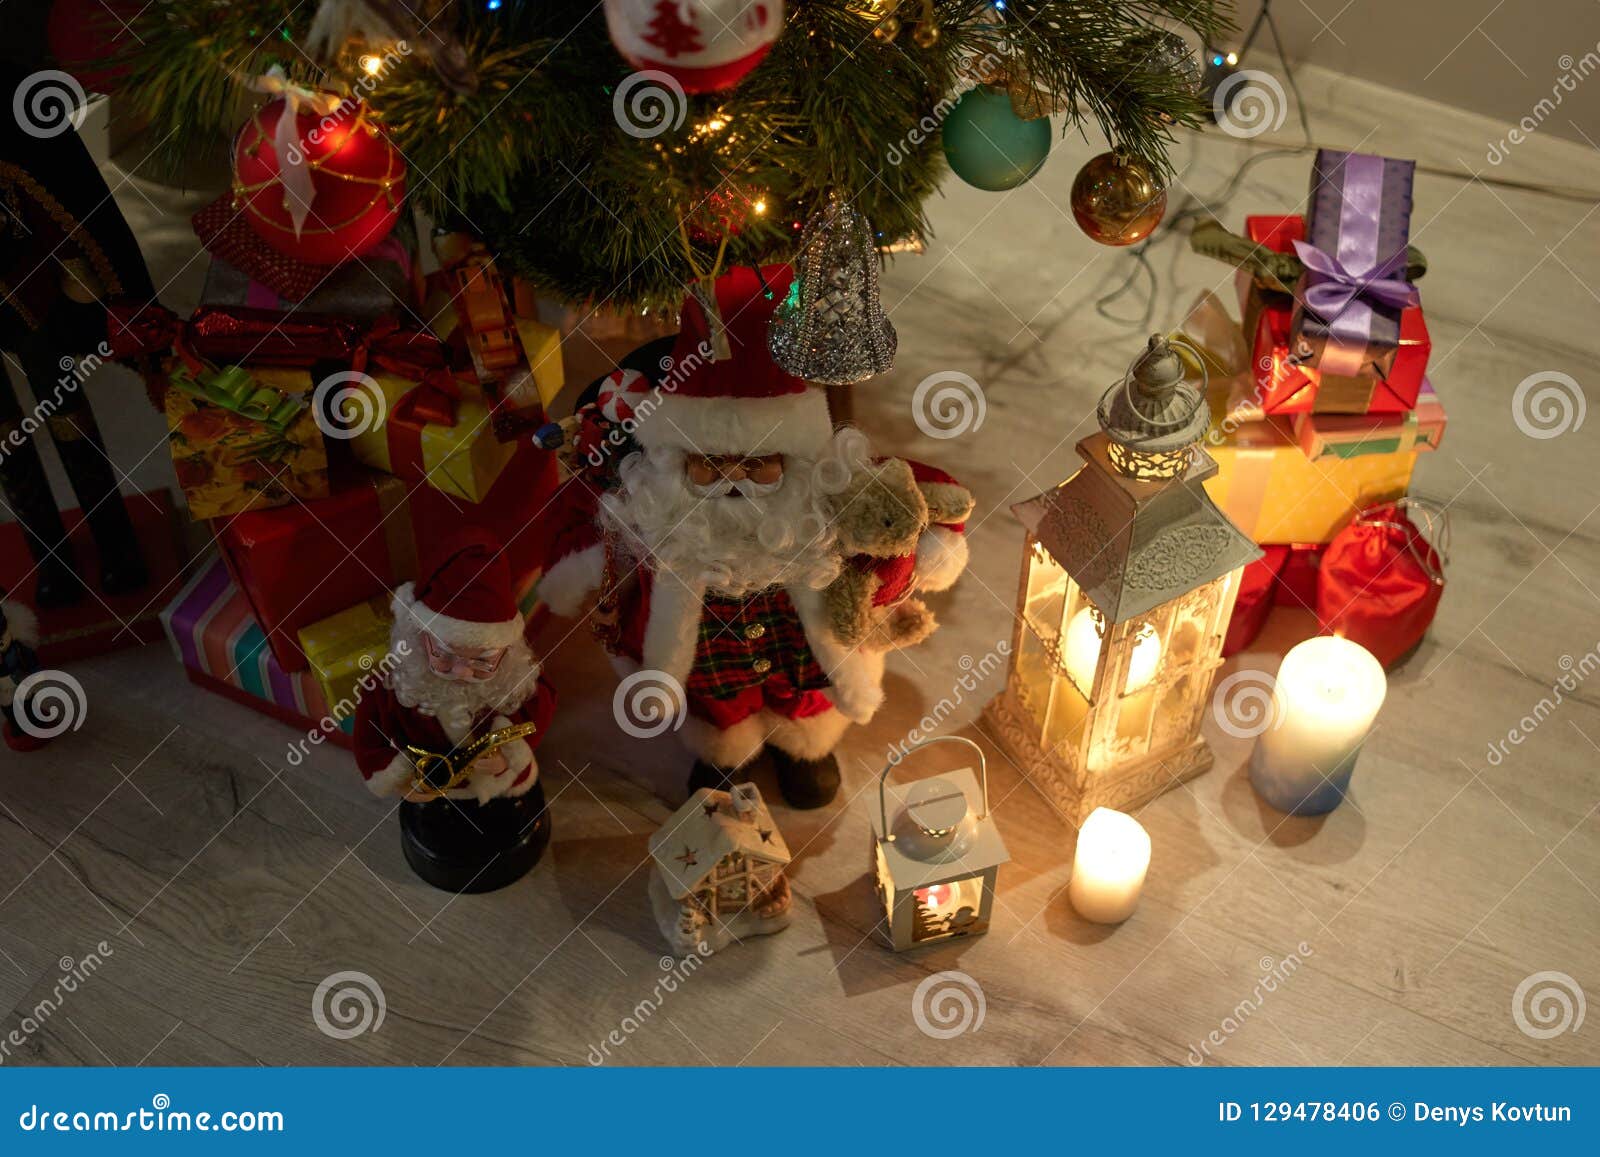 Regali Sotto L Albero Di Natale.Regali E Decorazioni Di Natale Sotto L Albero Fotografia Stock Immagine Di Allegro Celebrazione 129478406